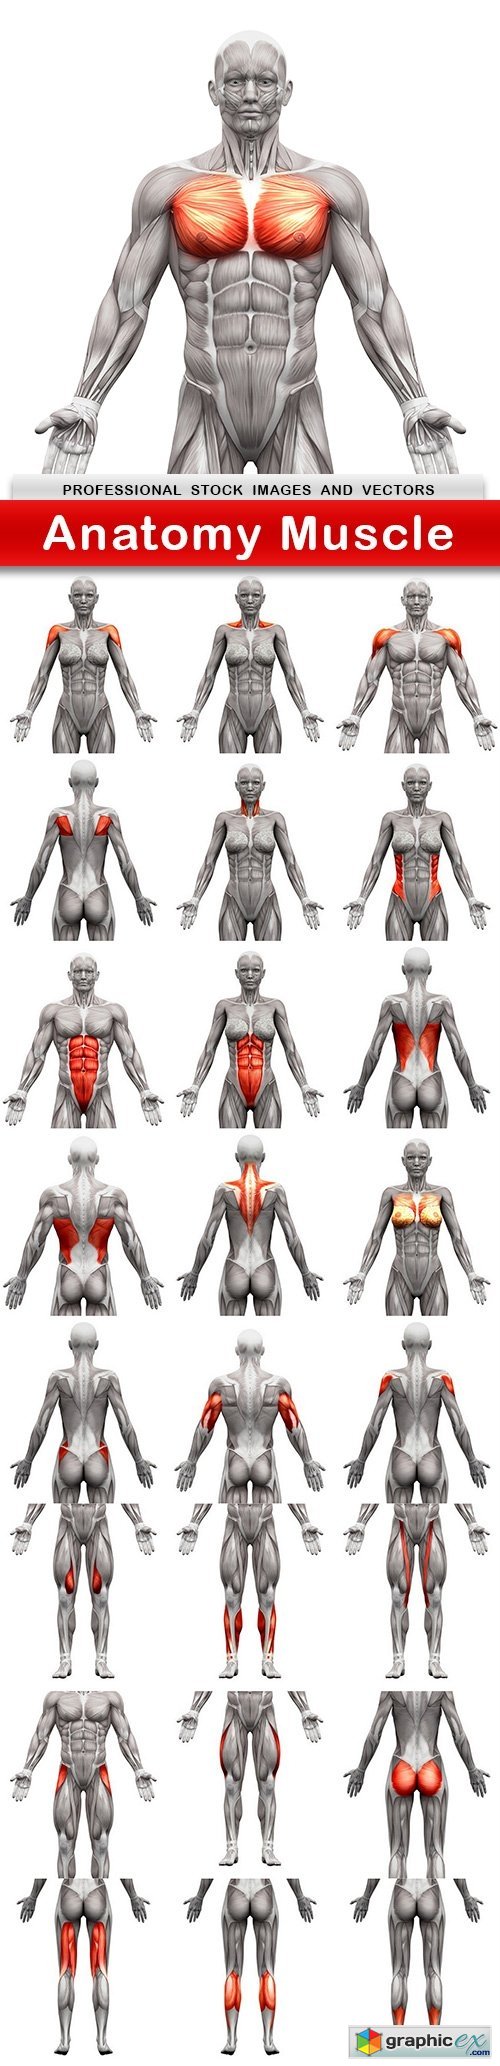 Anatomy Muscle - 25 UHQ JPEG